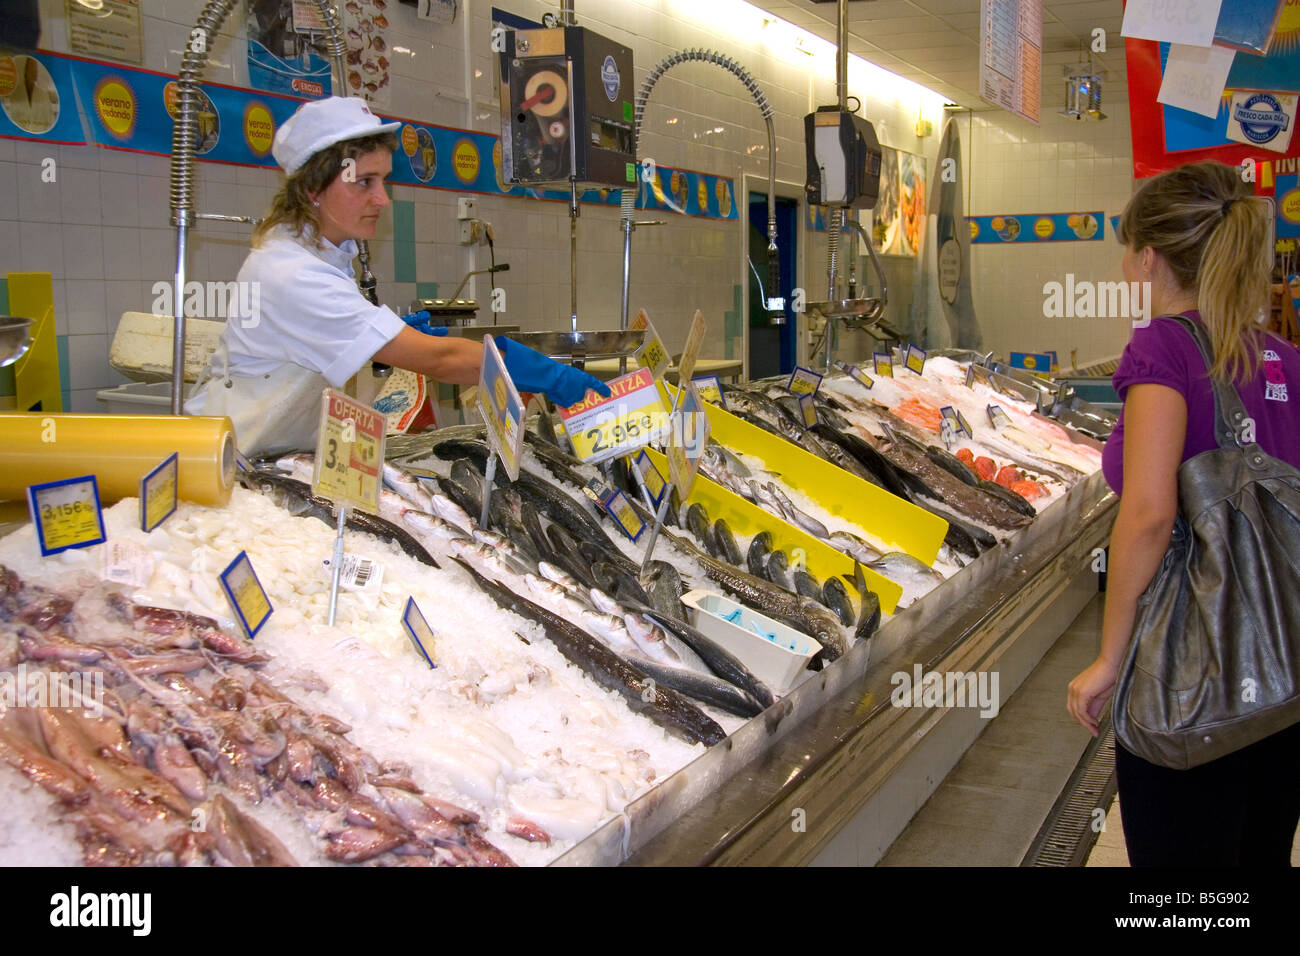 Mercado de pescado dentro de un supermercado en la ciudad de Guernica, en la provincia de Vizcaya, País Vasco, Norte de España Foto de stock